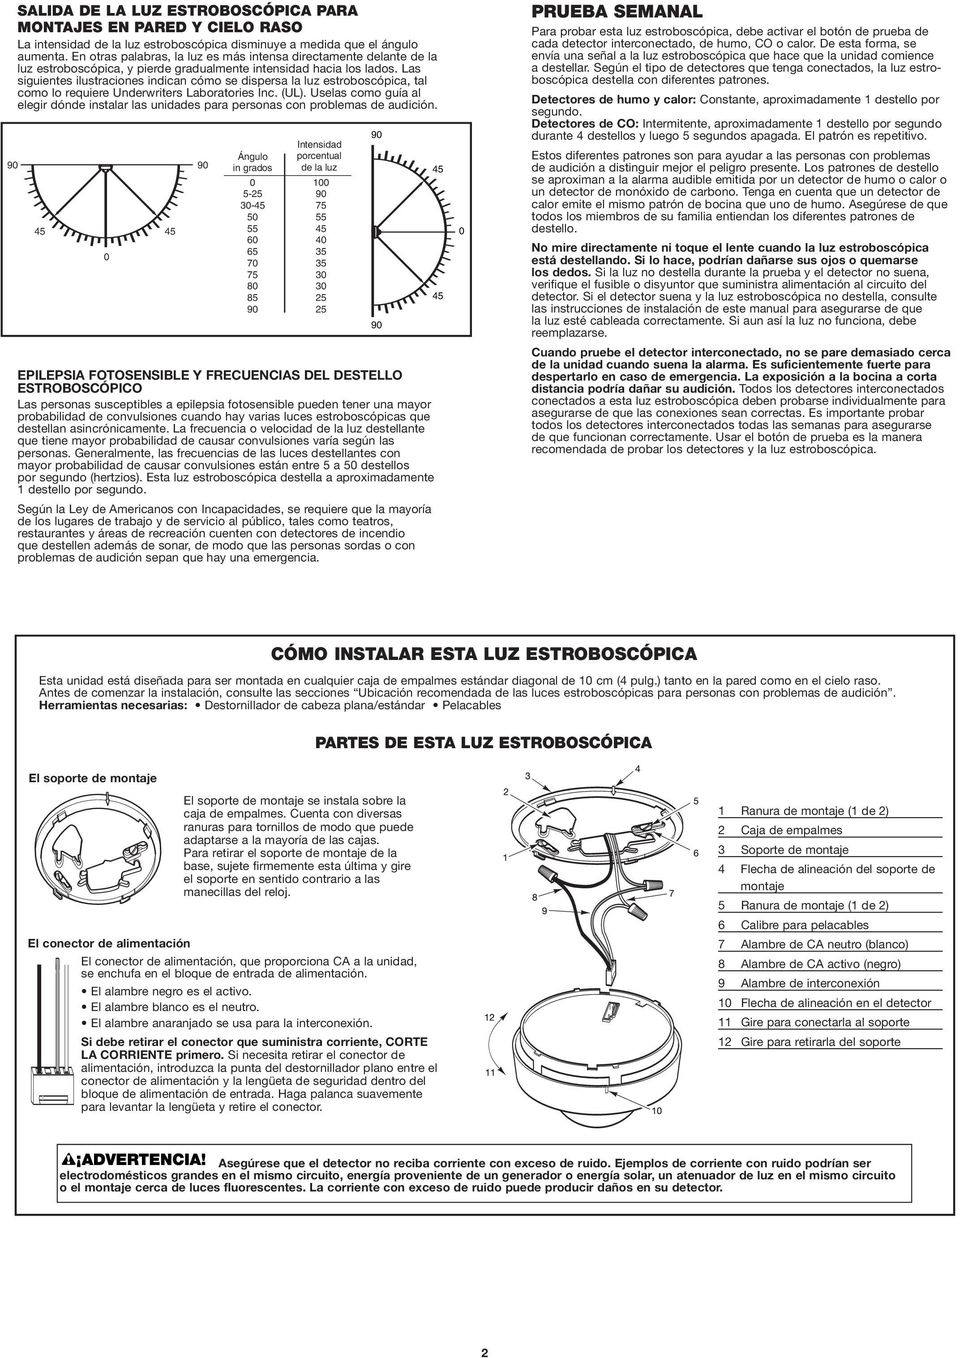 Las siguientes ilustraciones indican cómo se dispersa la luz estroboscópica, tal como lo requiere Underwriters Laboratories Inc. (UL).